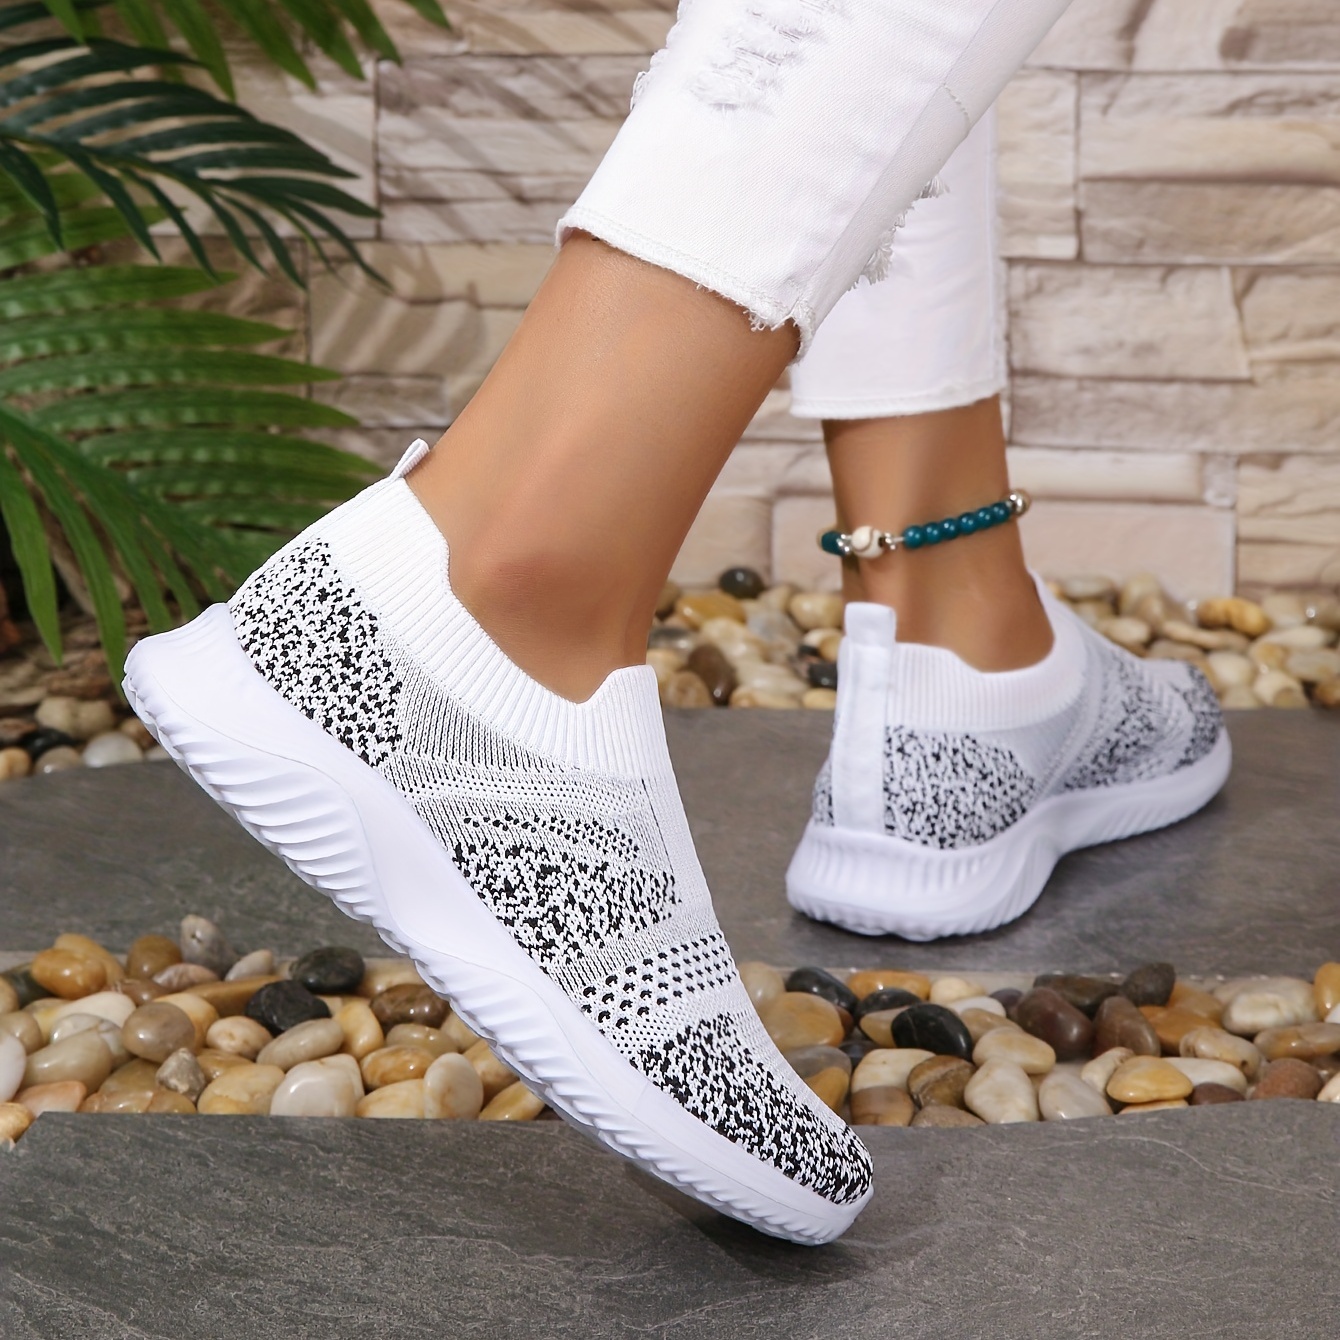 TIOSEBON Women's Slip On Walking Shoes Lightweight Casual Running Sneakers